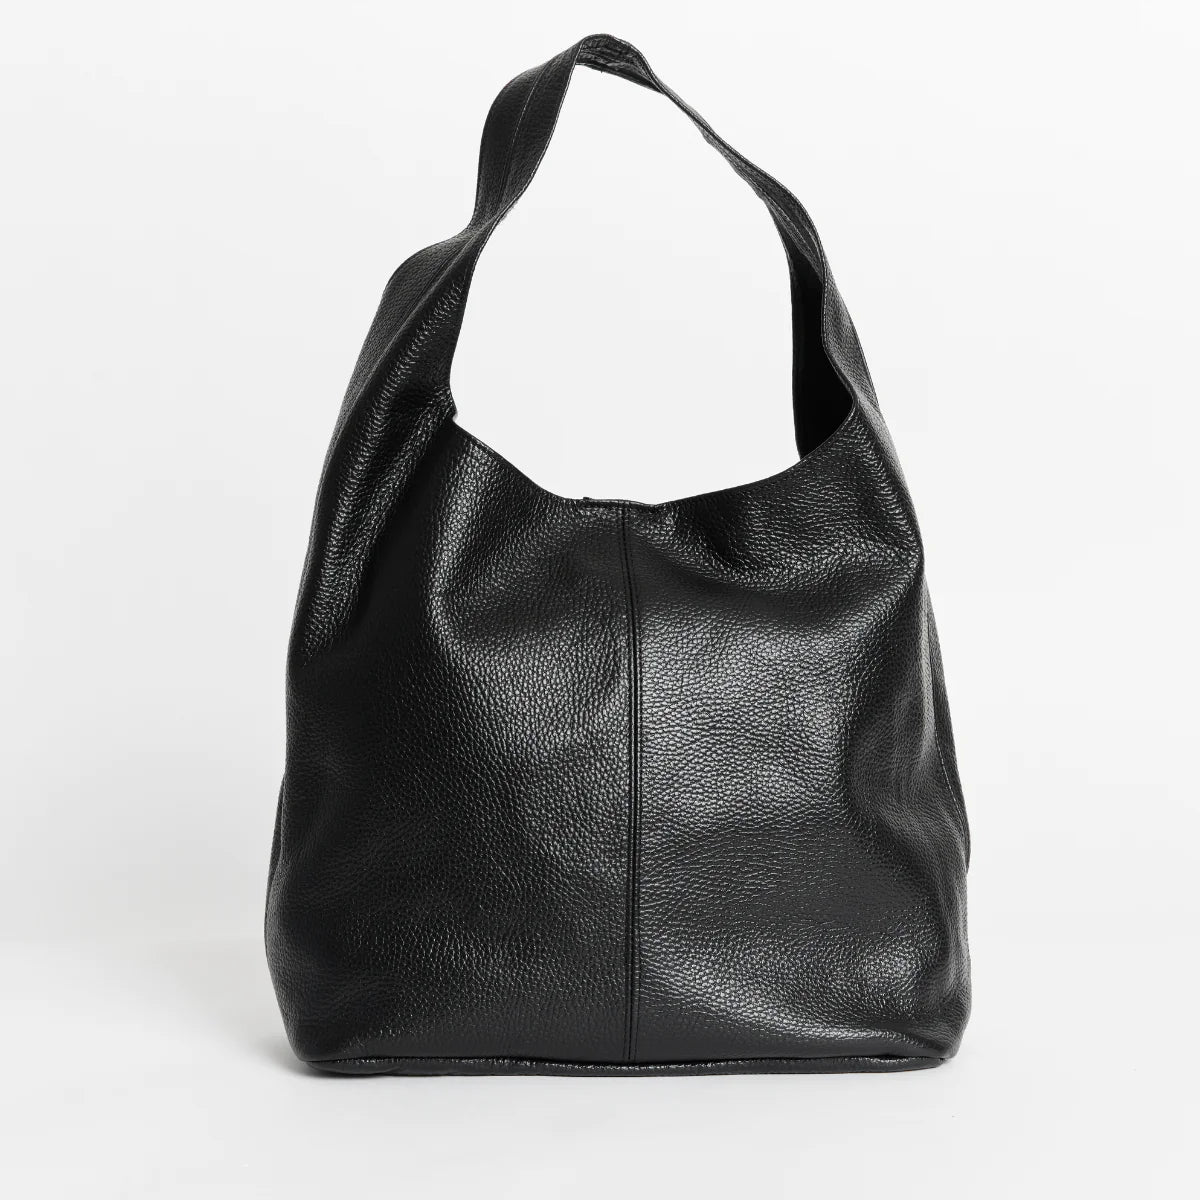 Scarlett Leather Hobo Bag - Black